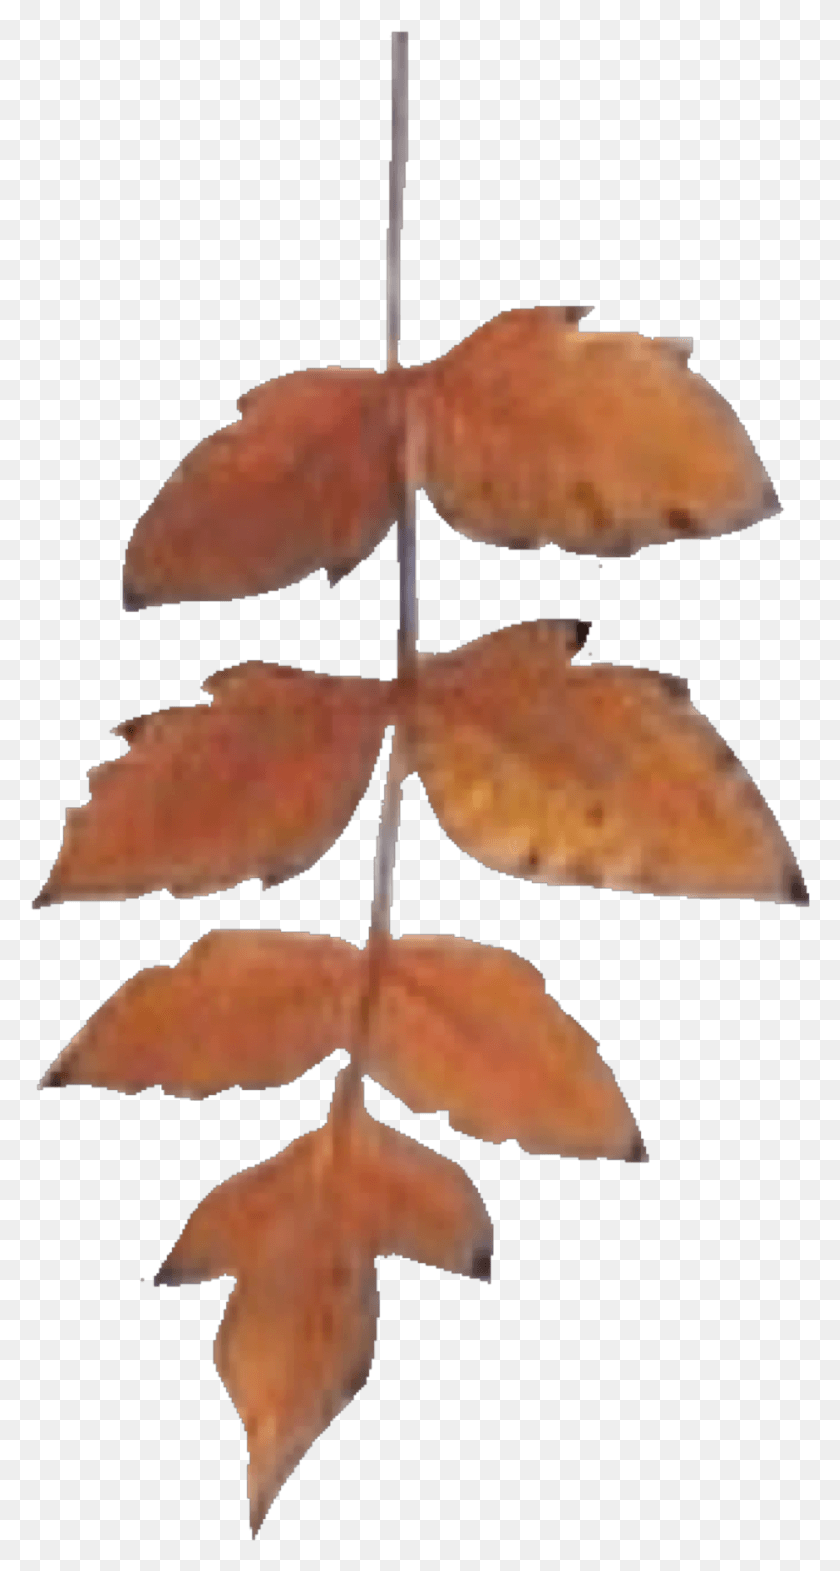 923x1789 Edpng Они Делают Moodboards Leaf Кленовый Лист, Растение, Дерево, Клен Hd Png Скачать